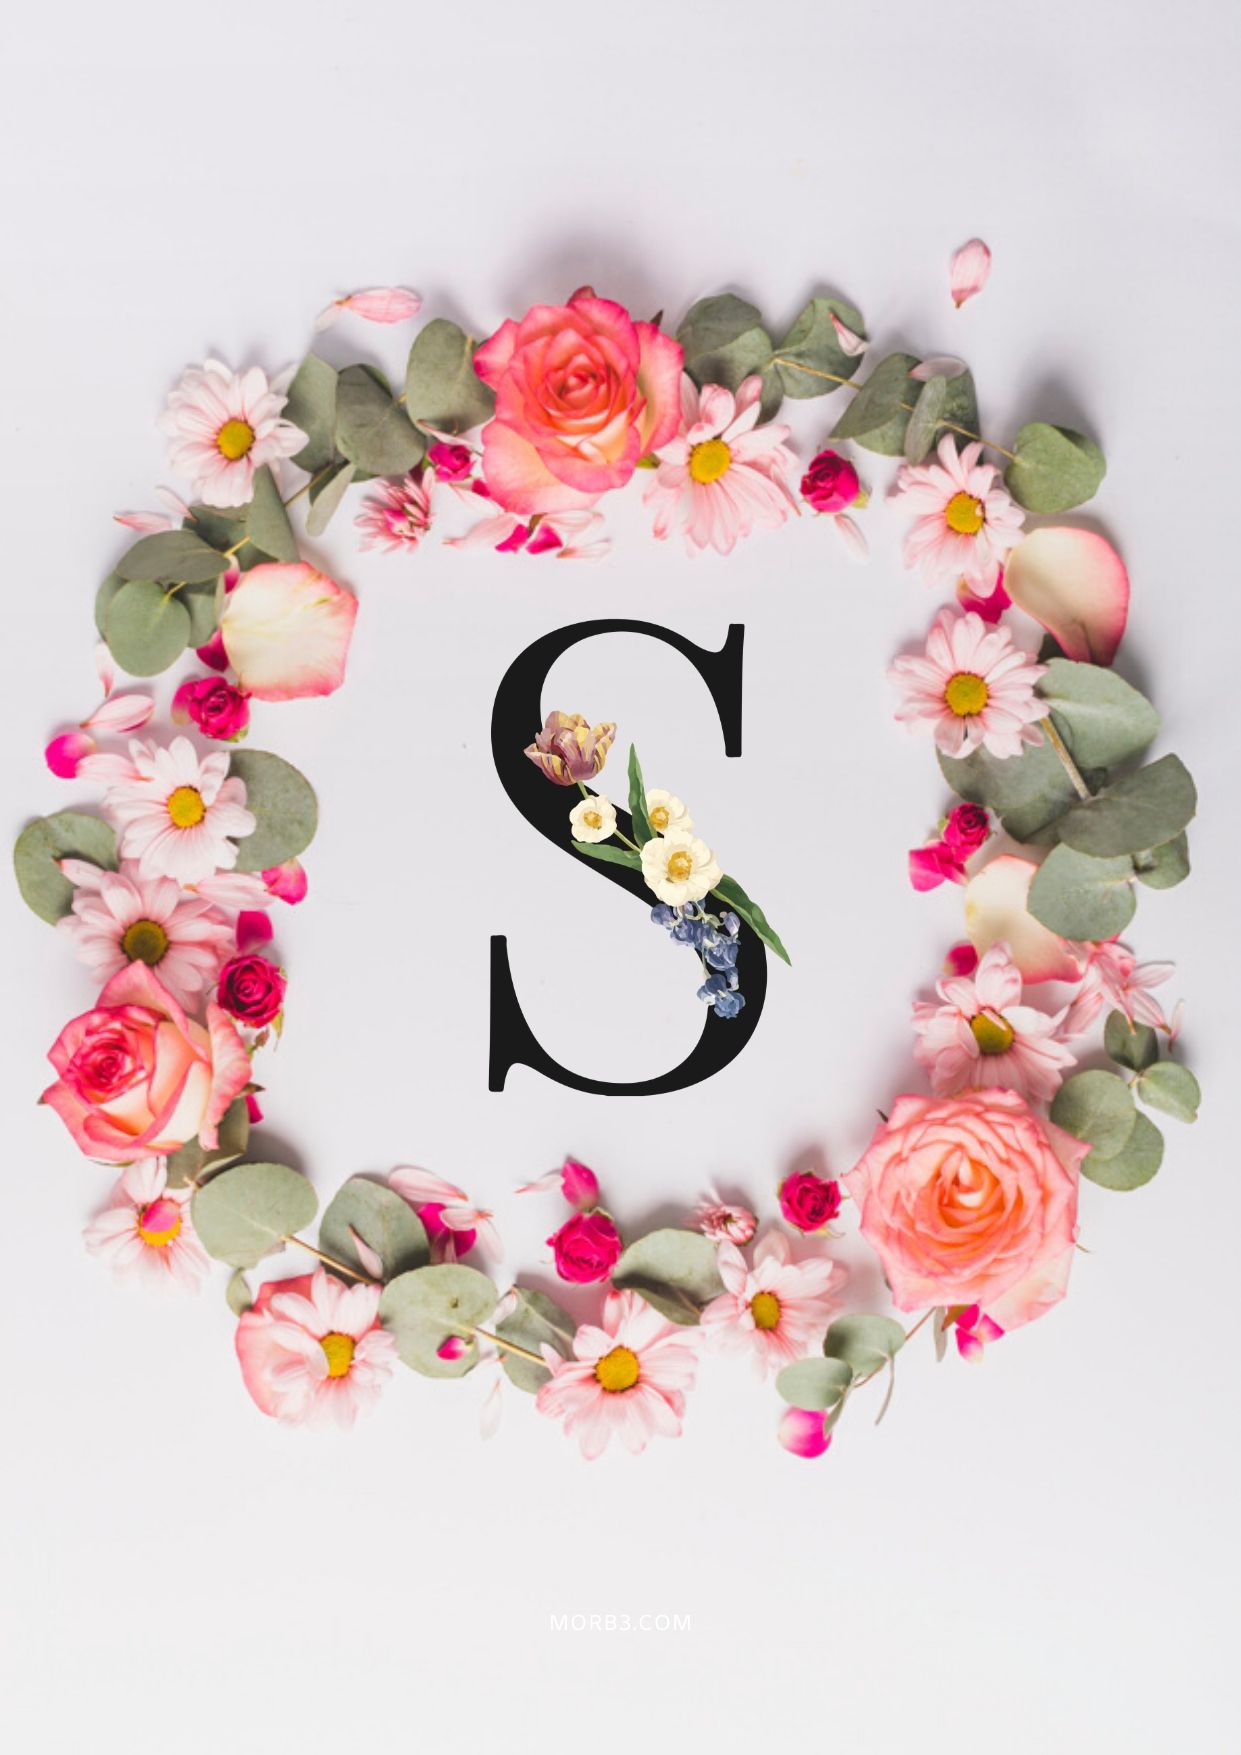 حرف S حوله حلقة من الورد